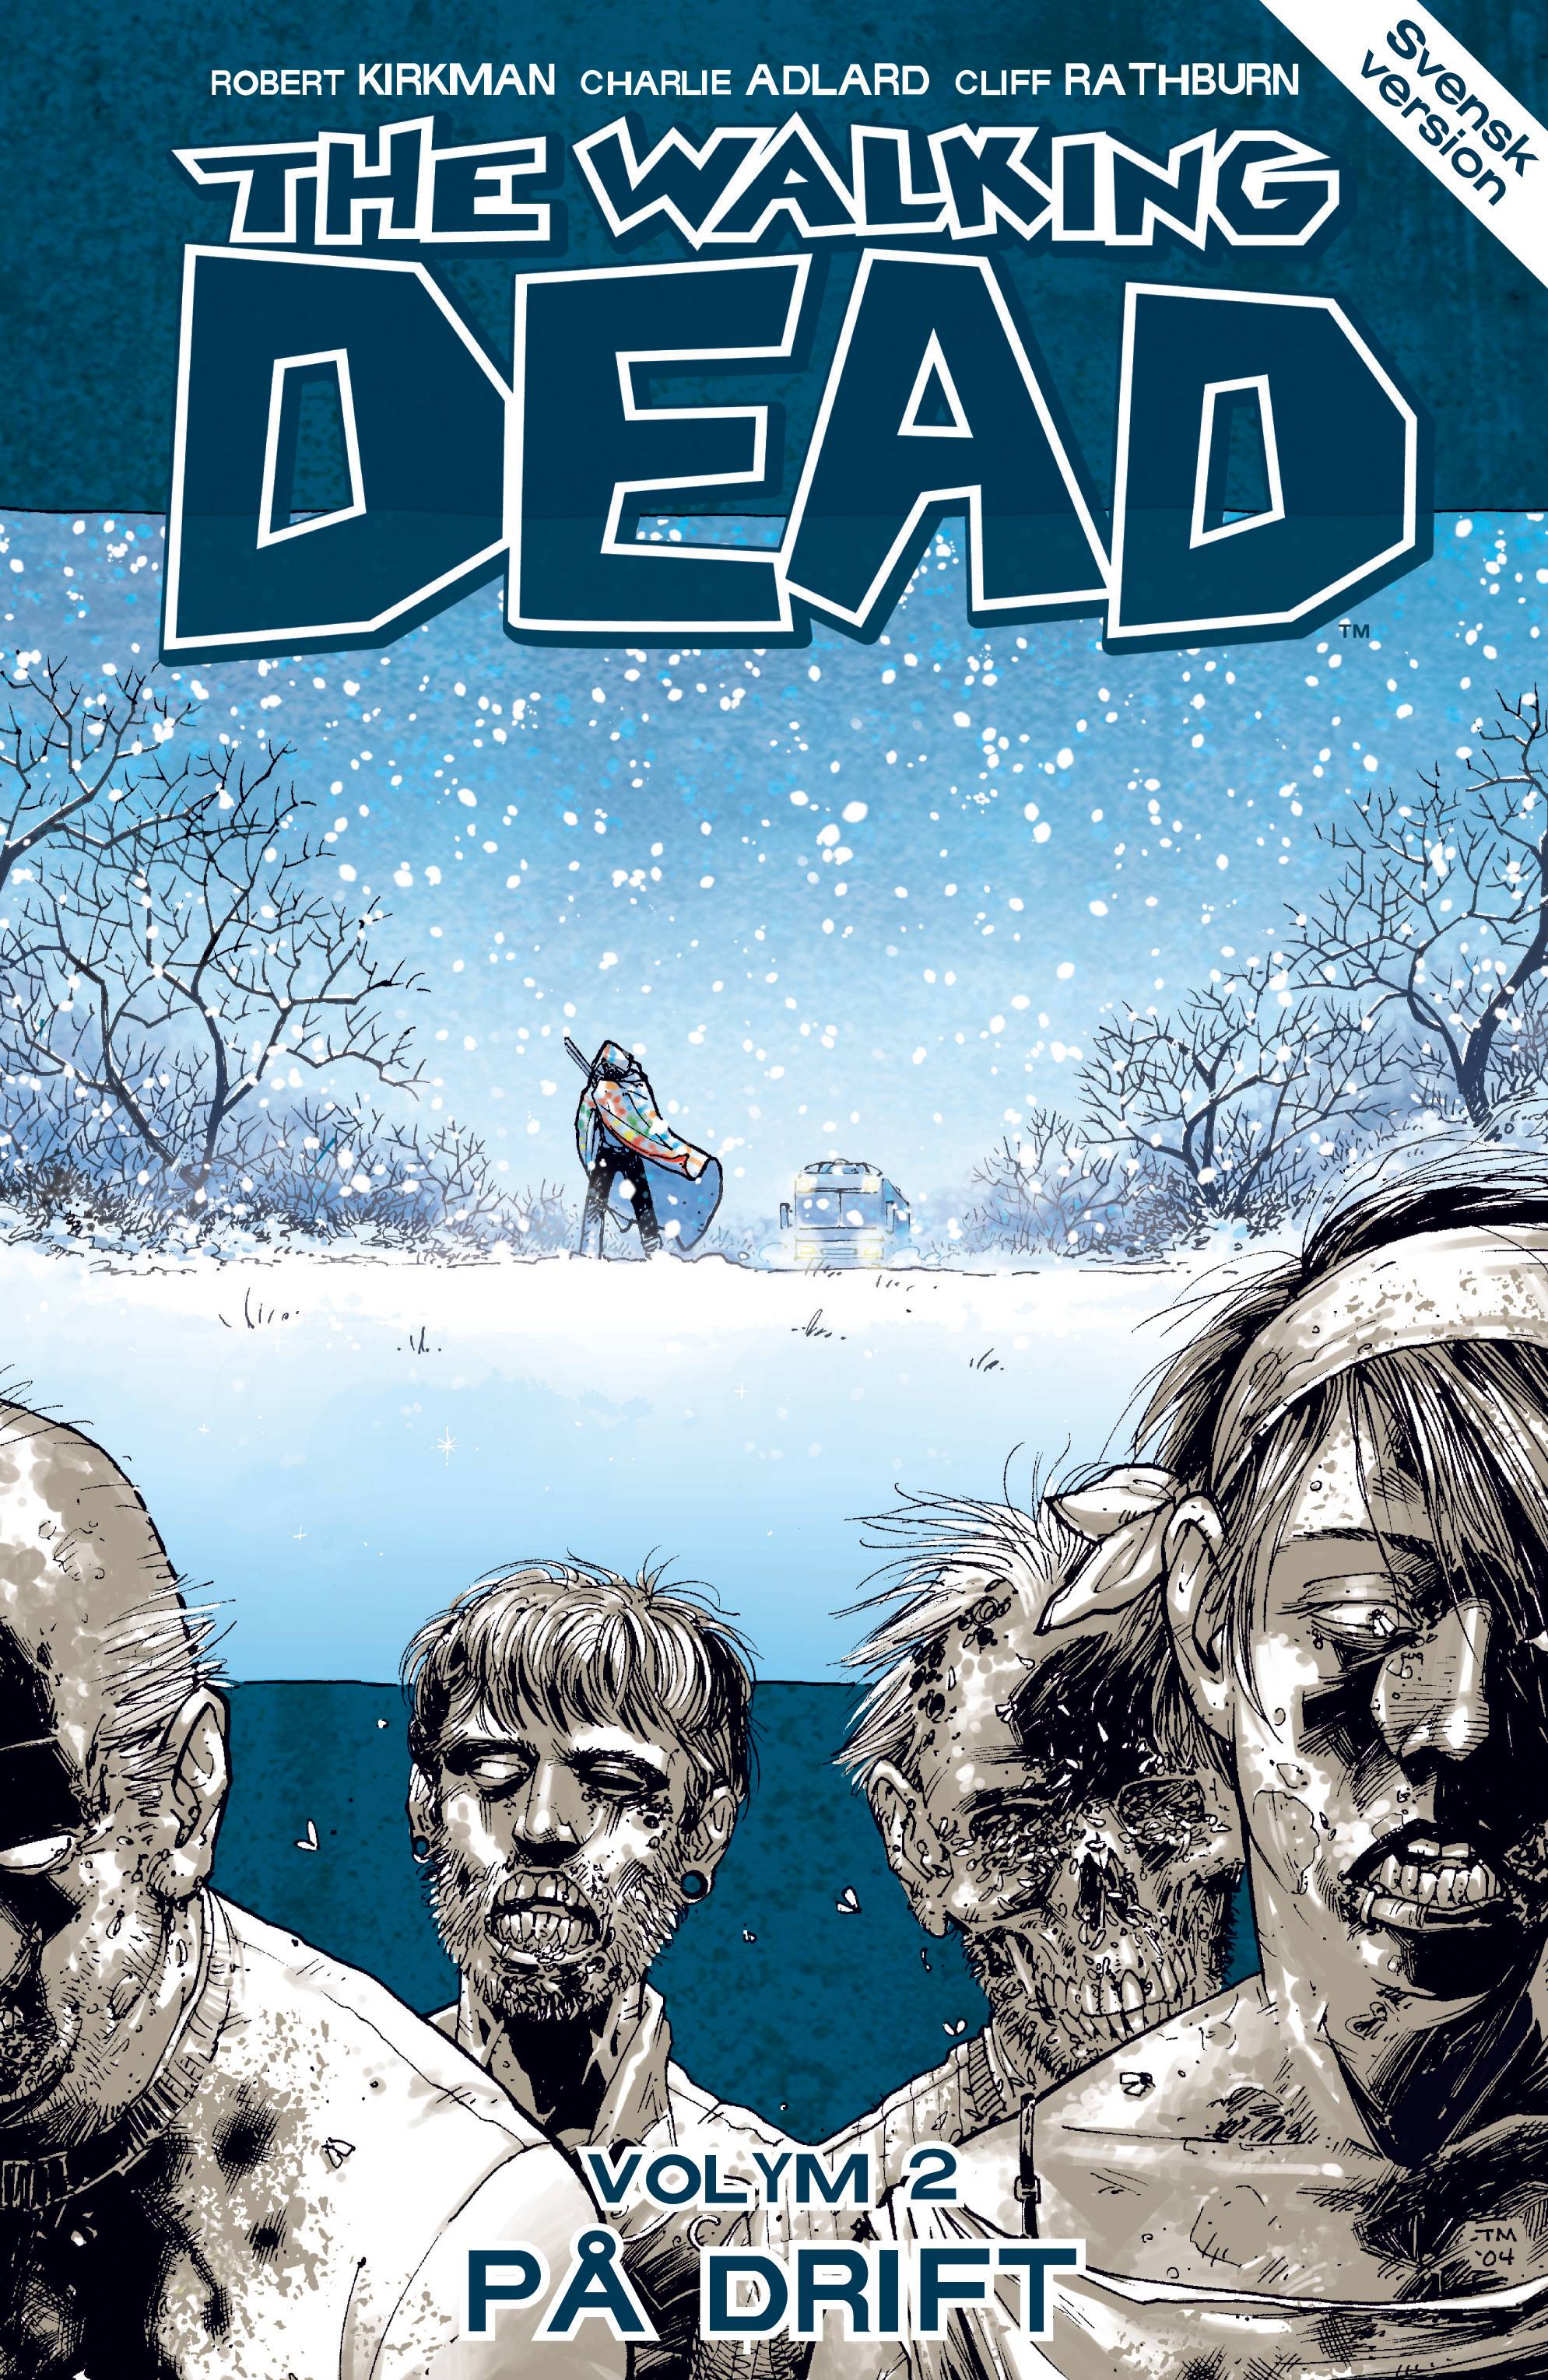 The Walking Dead volym 2: På drift